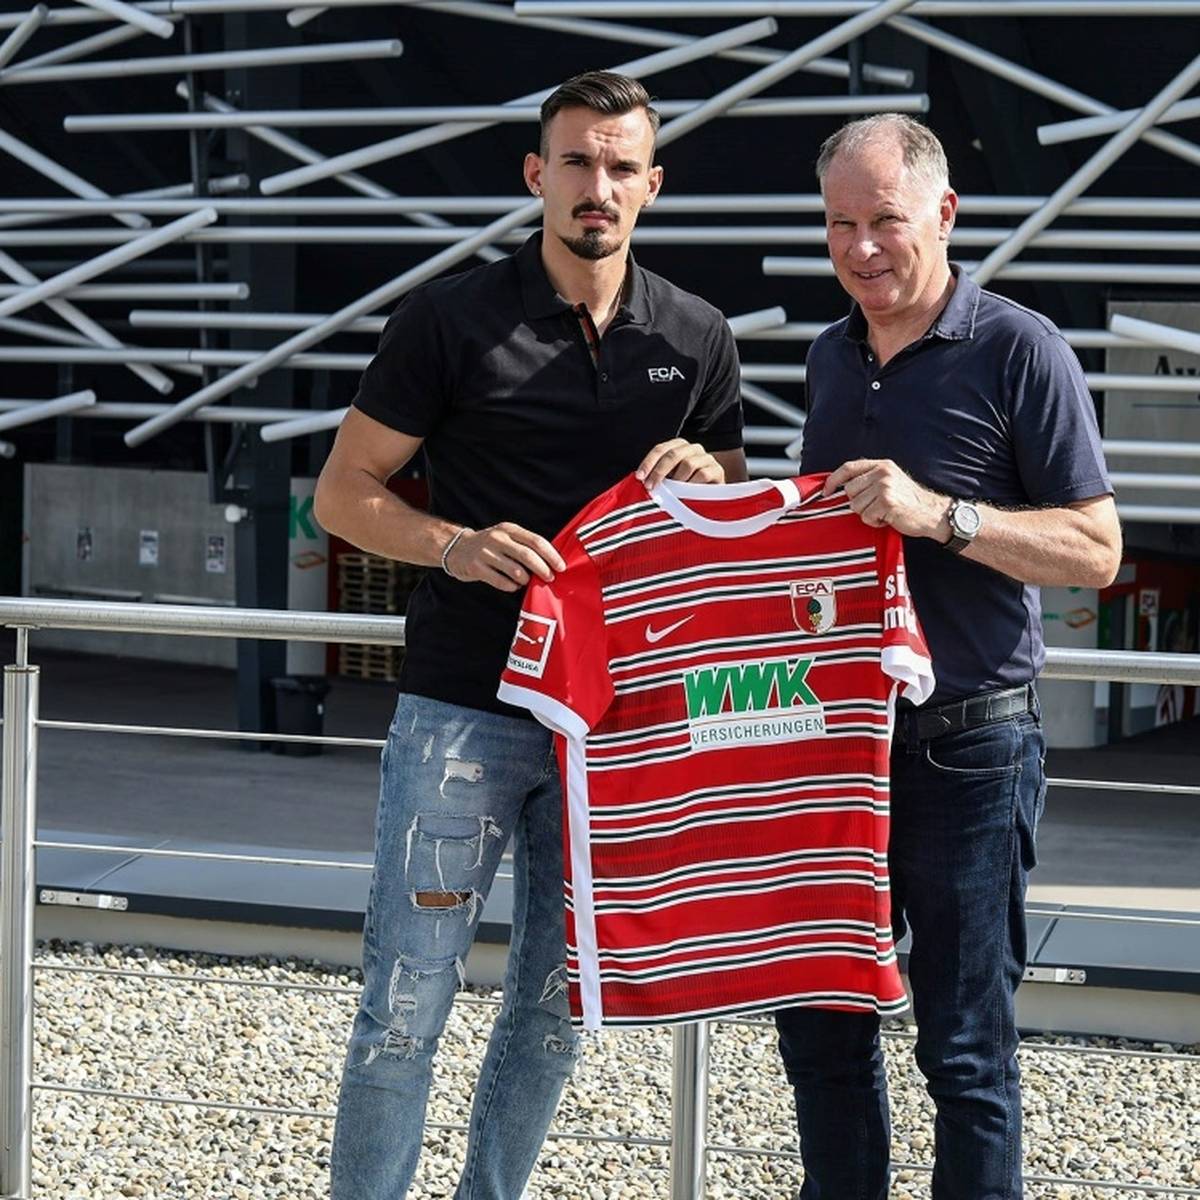 Springt ein junger Profi des FC Augsburg wenige Wochen vor dem Turnierstart noch auf den WM-Zug? Geht es nach Stefan Reuter, ist Mergim Berisha ein vielversprechender Kandidat. 